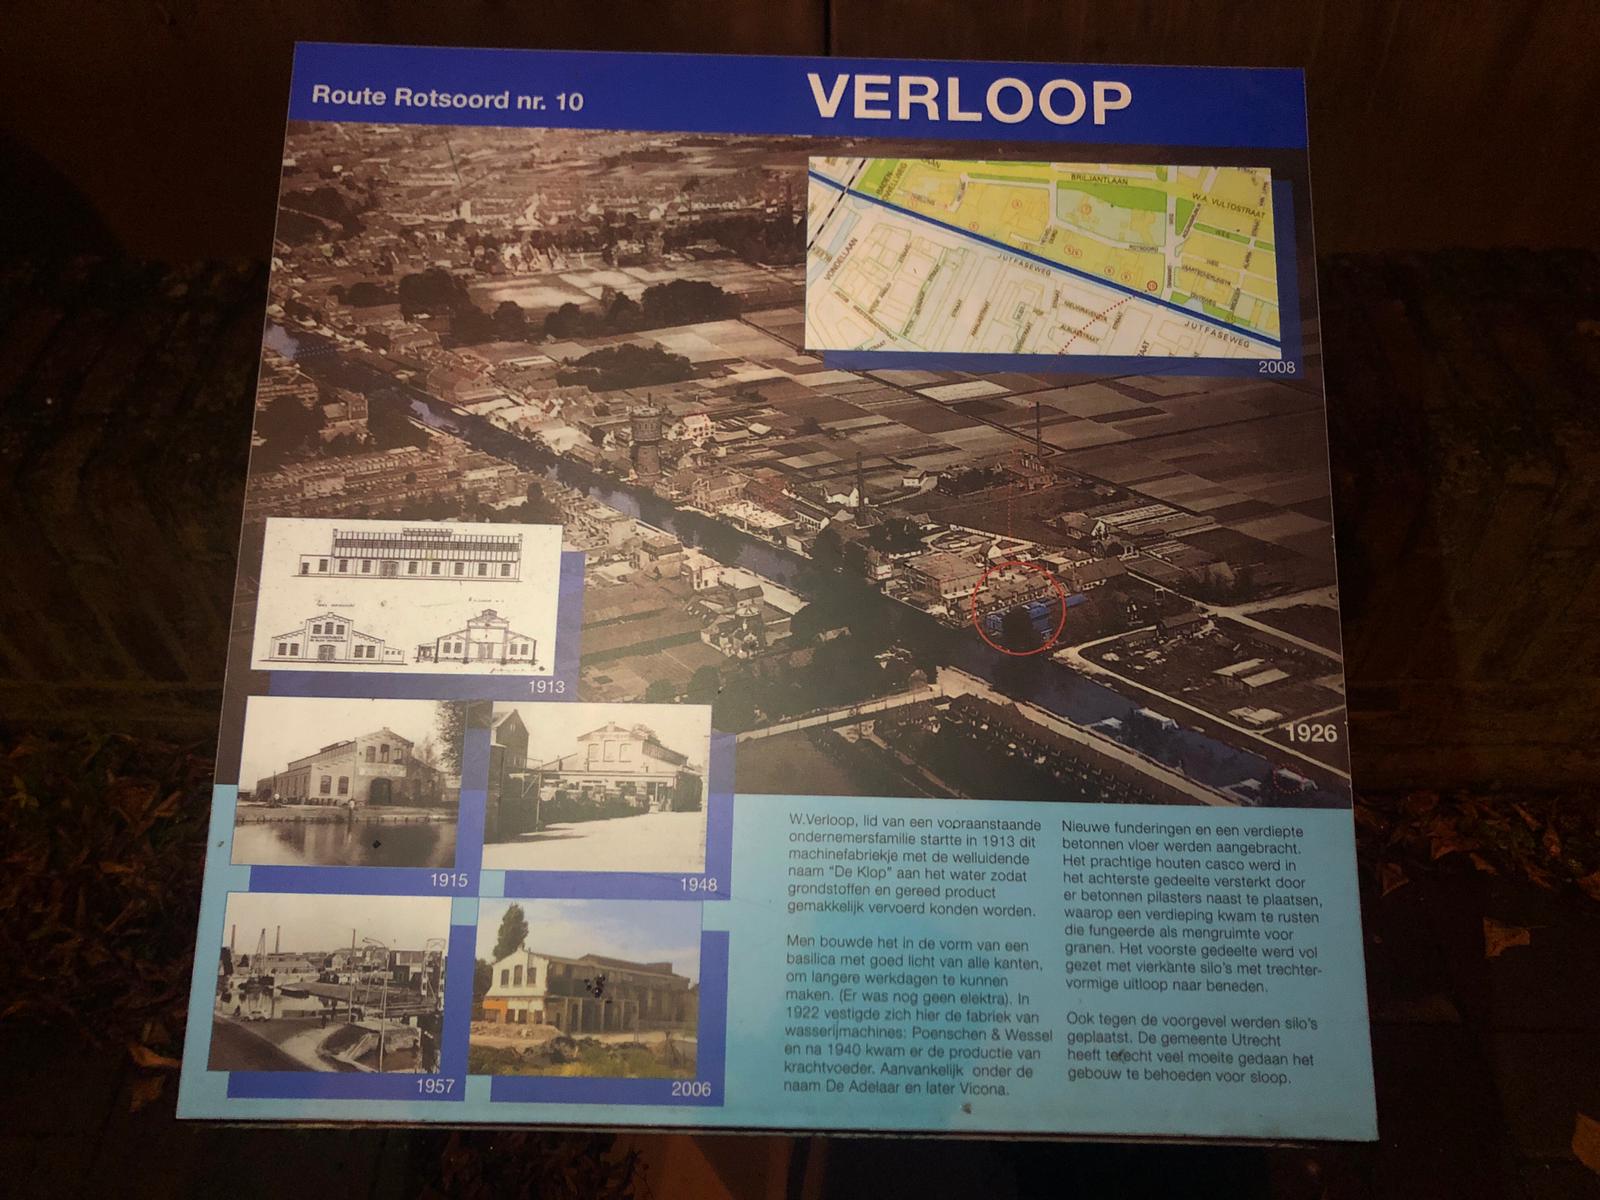 Route Rotsoord no. 10 – Verloop